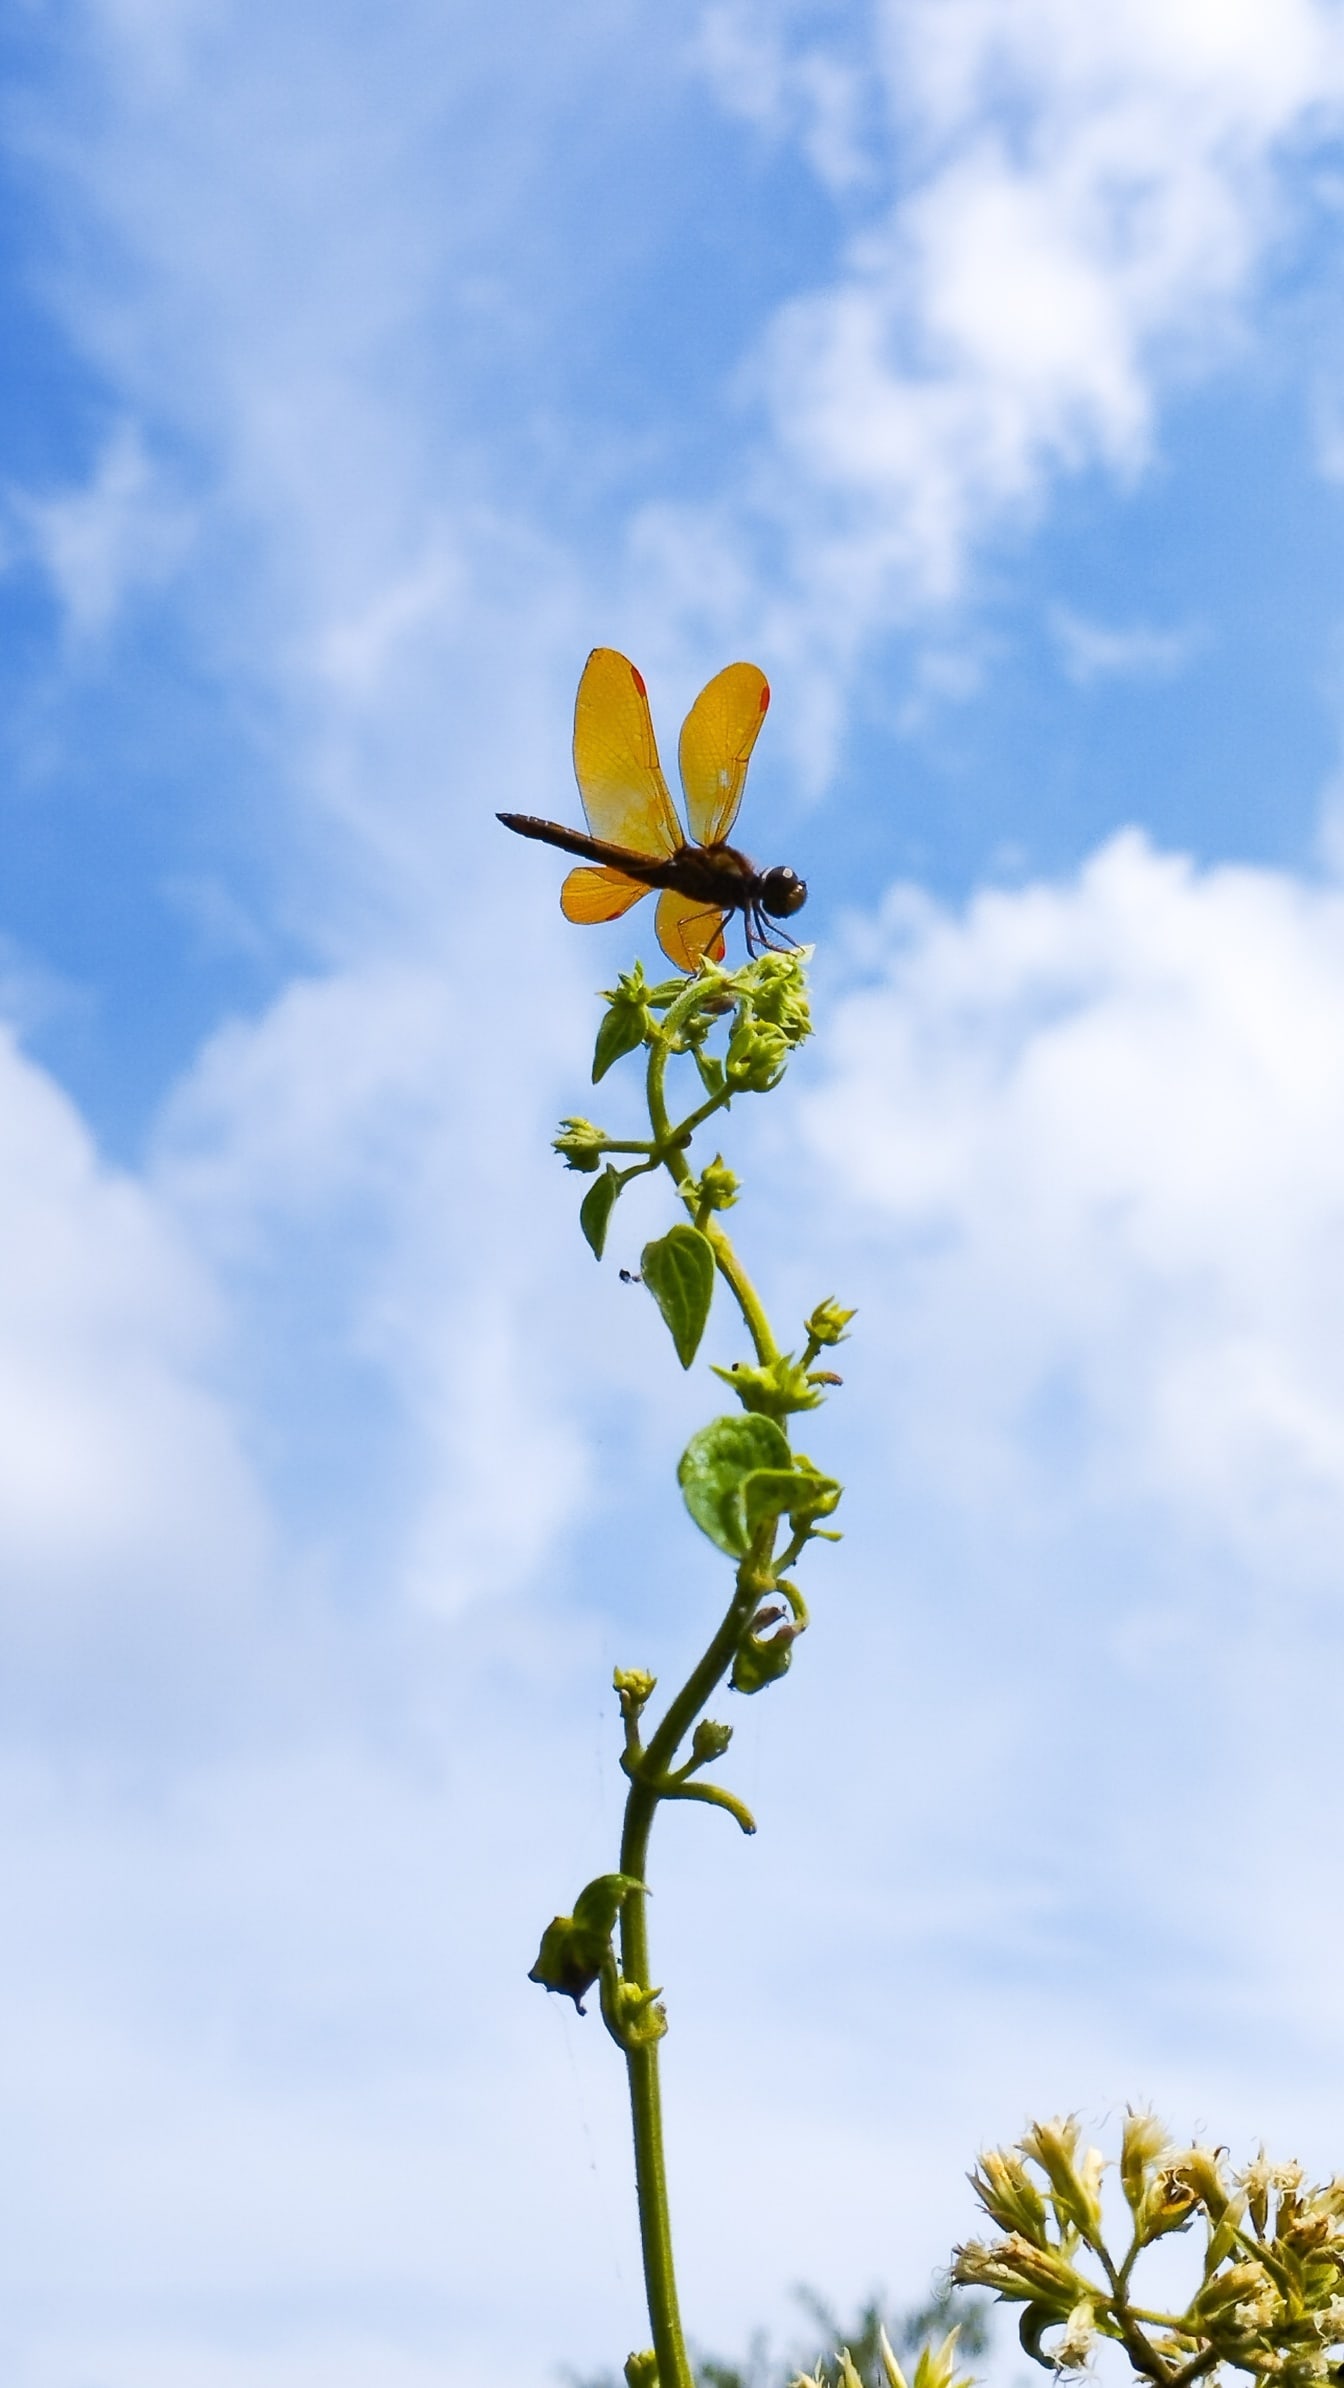 Wschodnia ważka bursztynowoskrzydła (Perithemis tenera) na szczycie rośliny z błękitnym niebem w tle